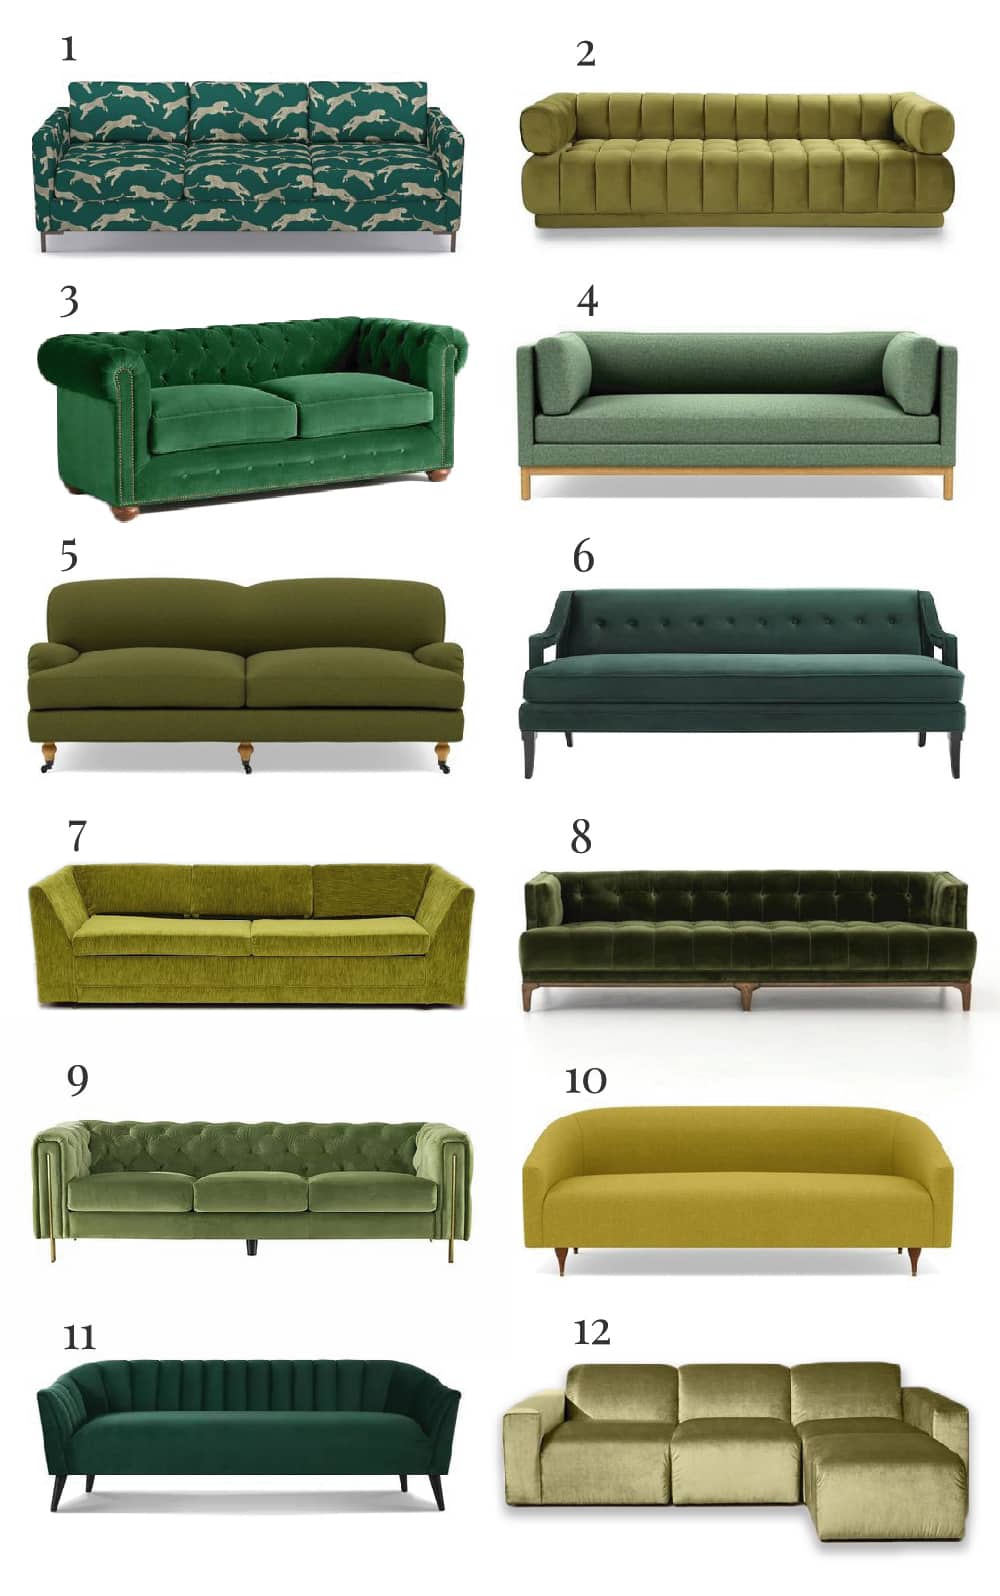 Best green sofas